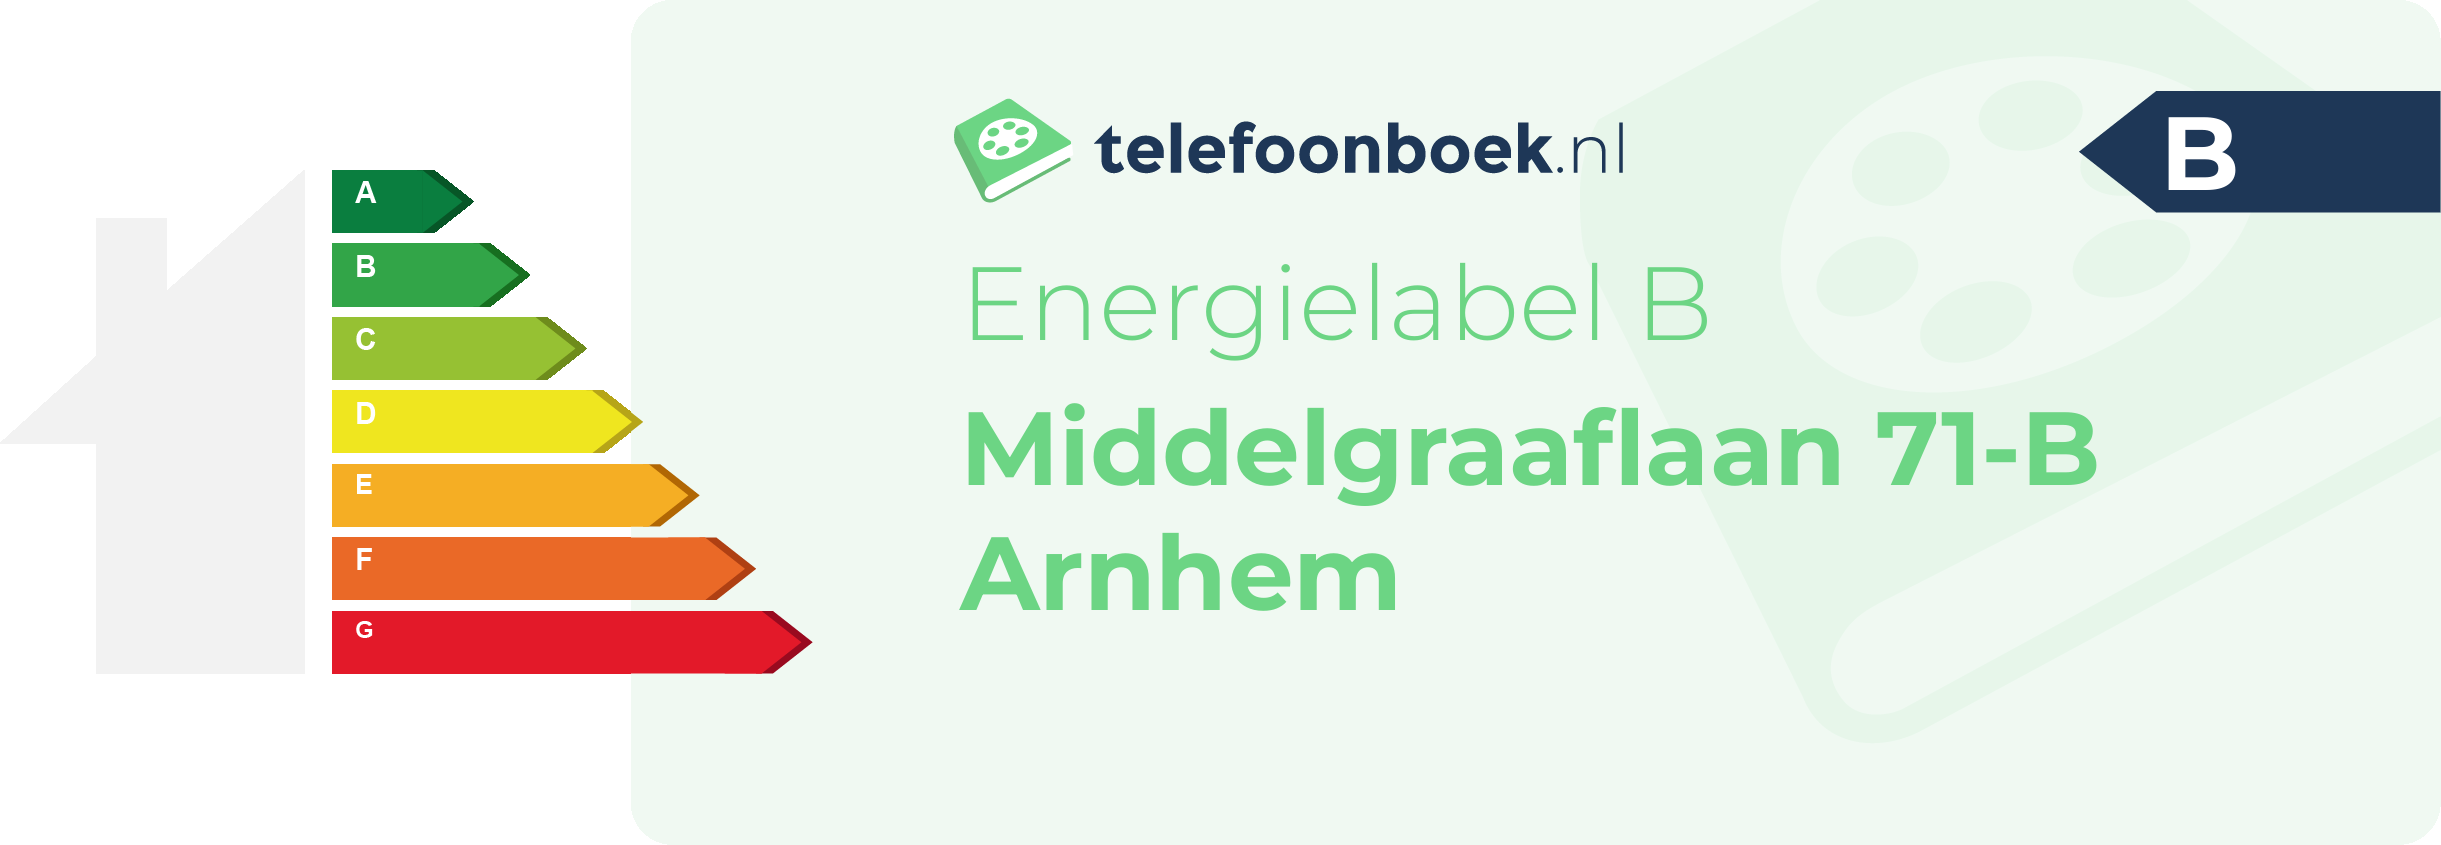 Energielabel Middelgraaflaan 71-B Arnhem